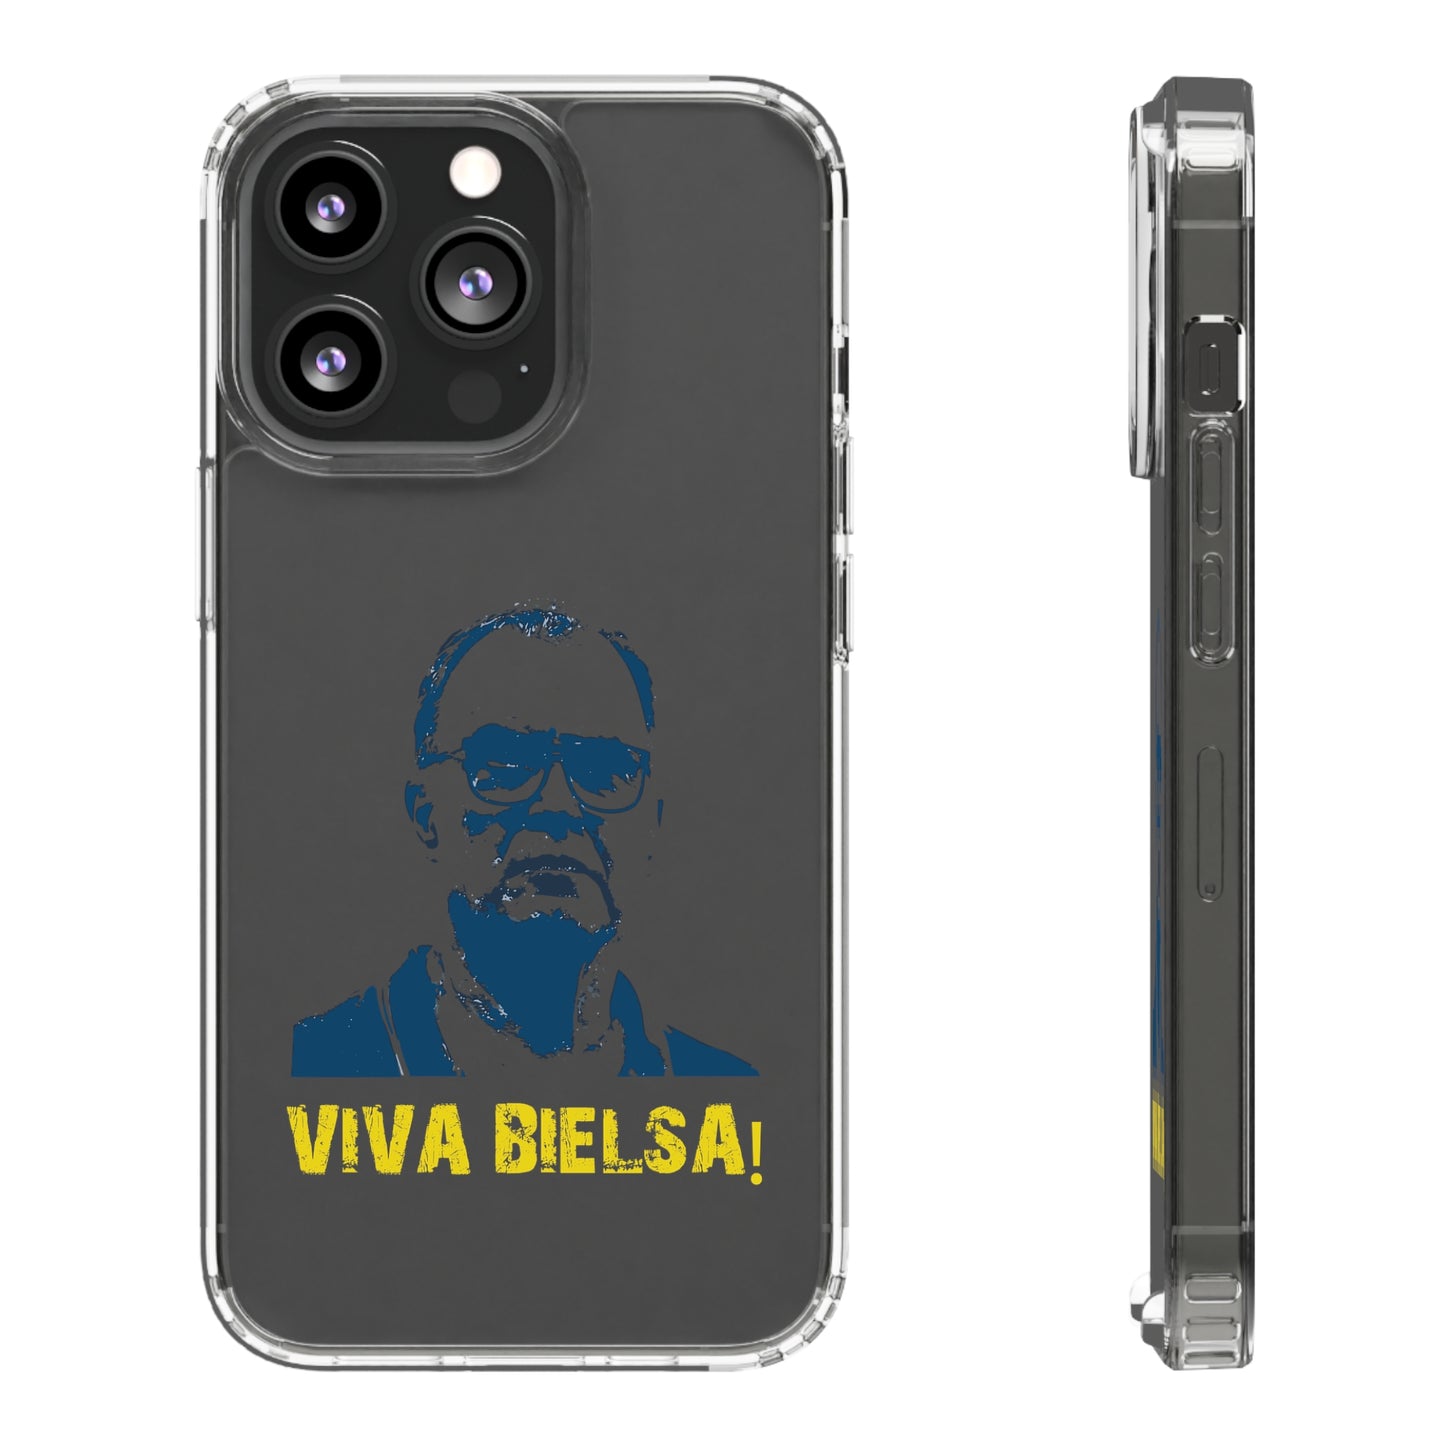 透明手机壳 - Viva Bielsa！